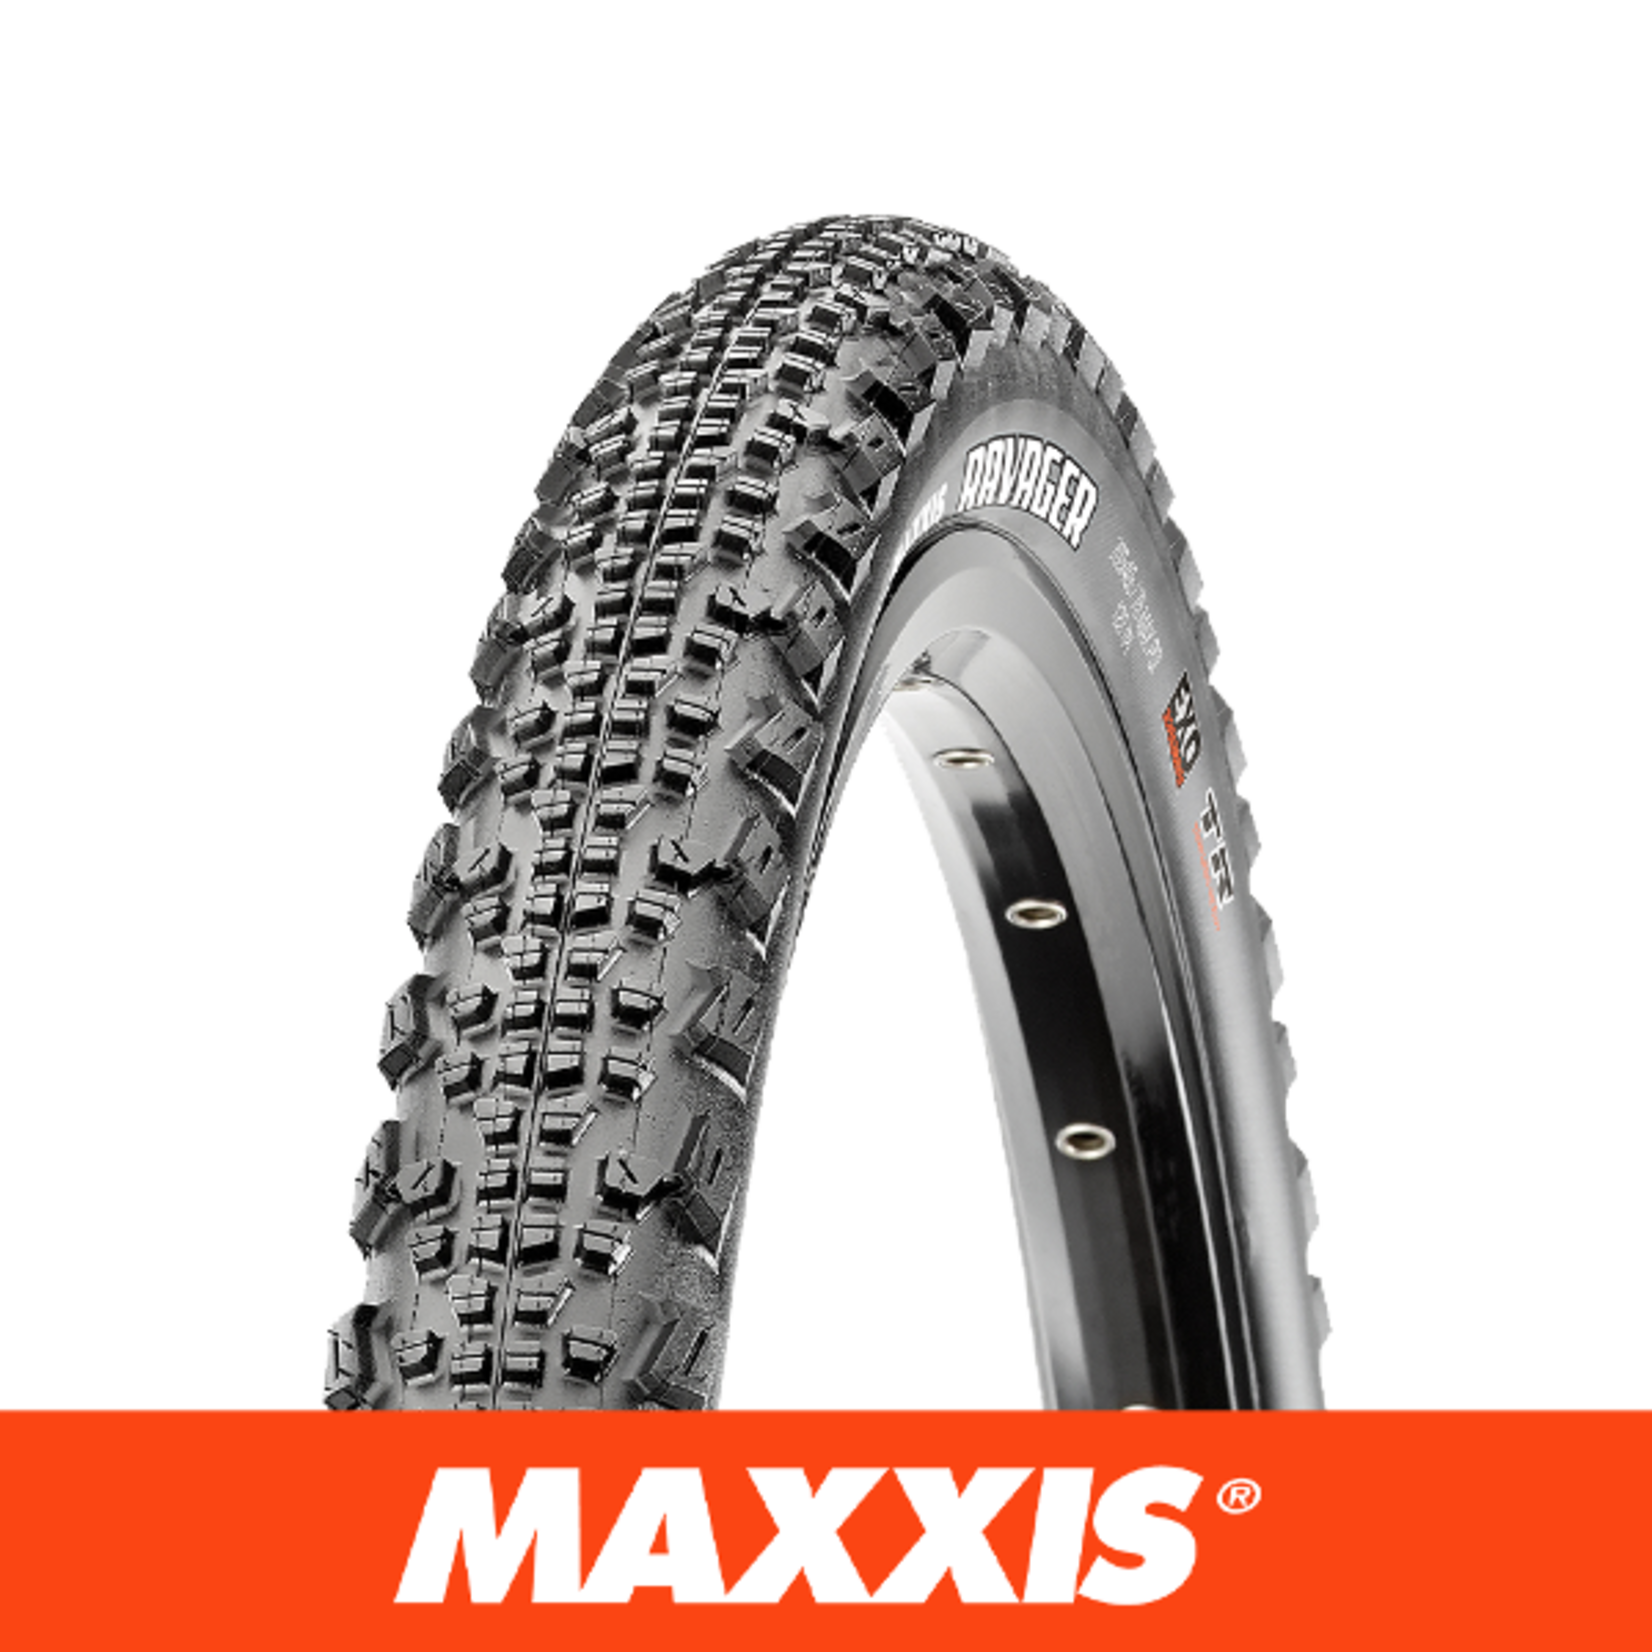 Maxxis Maxxis Ravager Bike Tyre - 700 X 40 - Folding 60Tpi Silkshield TR - Pair